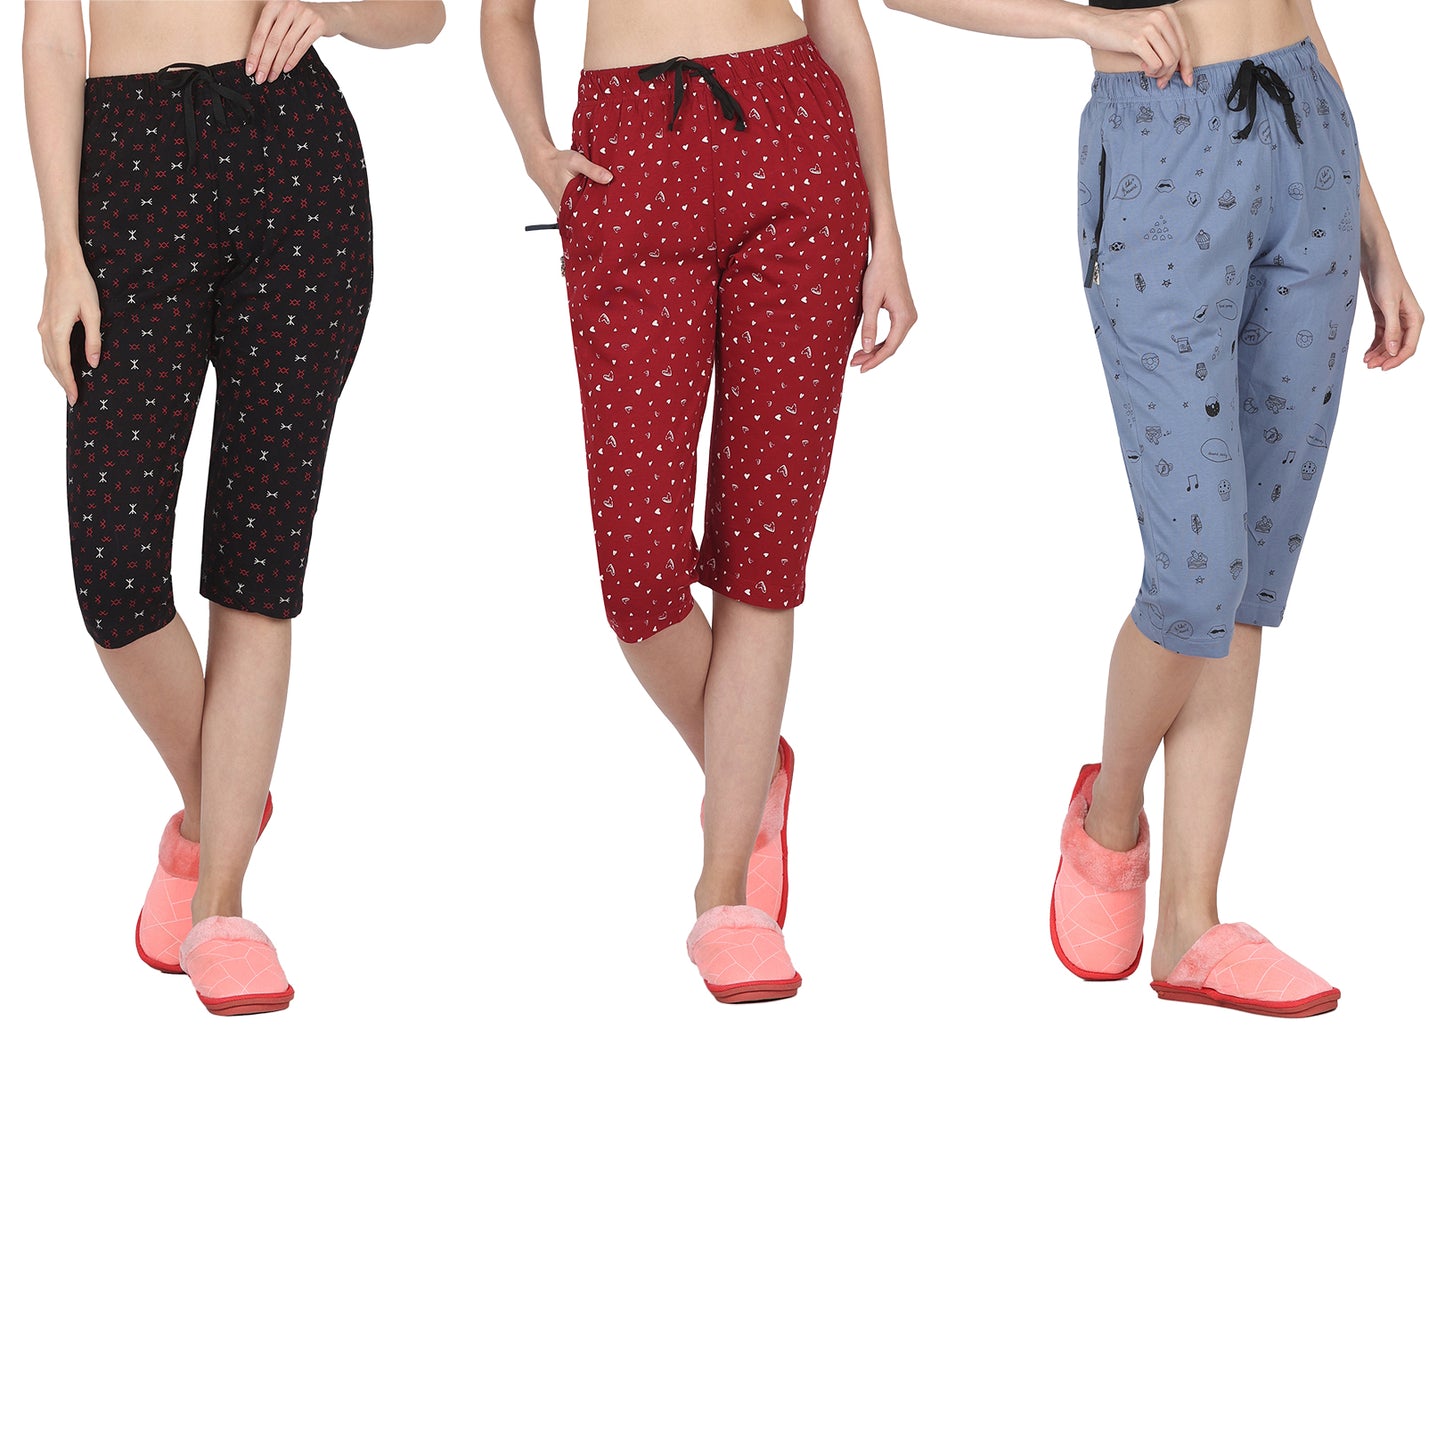 Eazy Women's Printed Capri Pants- Pack of 3- Black, Cherry Red & Steel Blue